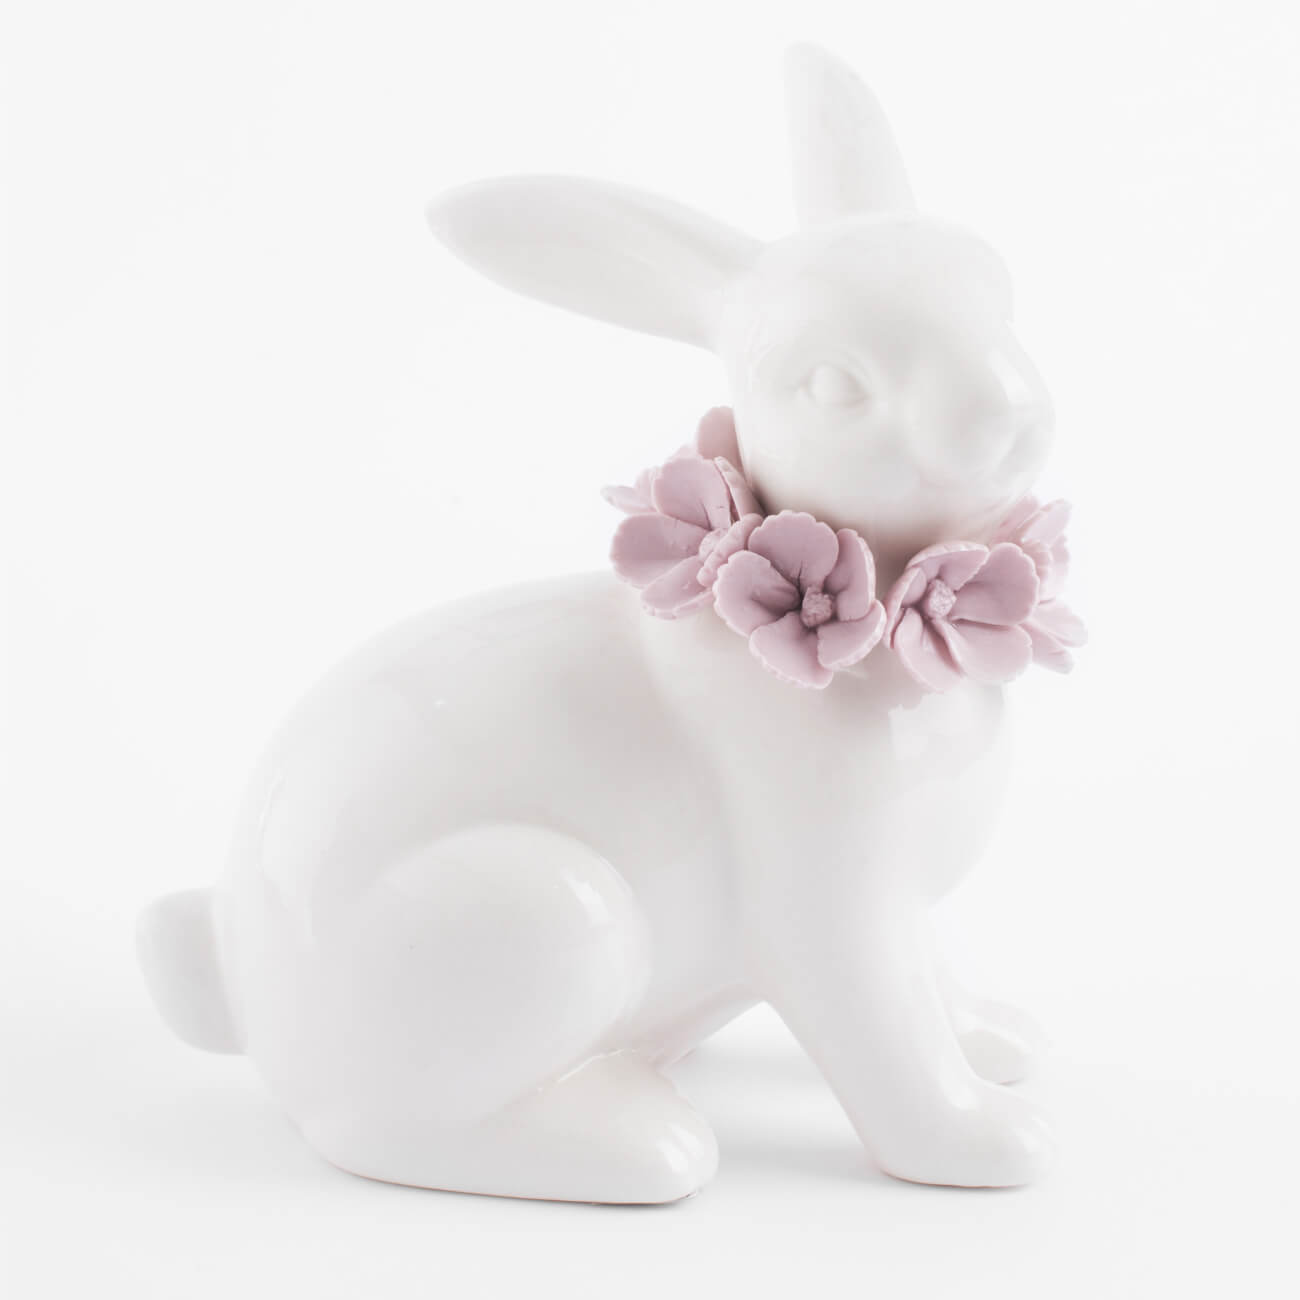 статуэтка с подсветкой 13 см фарфор p белая кролик с ами easter Статуэтка, 15 см, фарфор Porcelain, белая, Кролик в цветах, Pure Easter